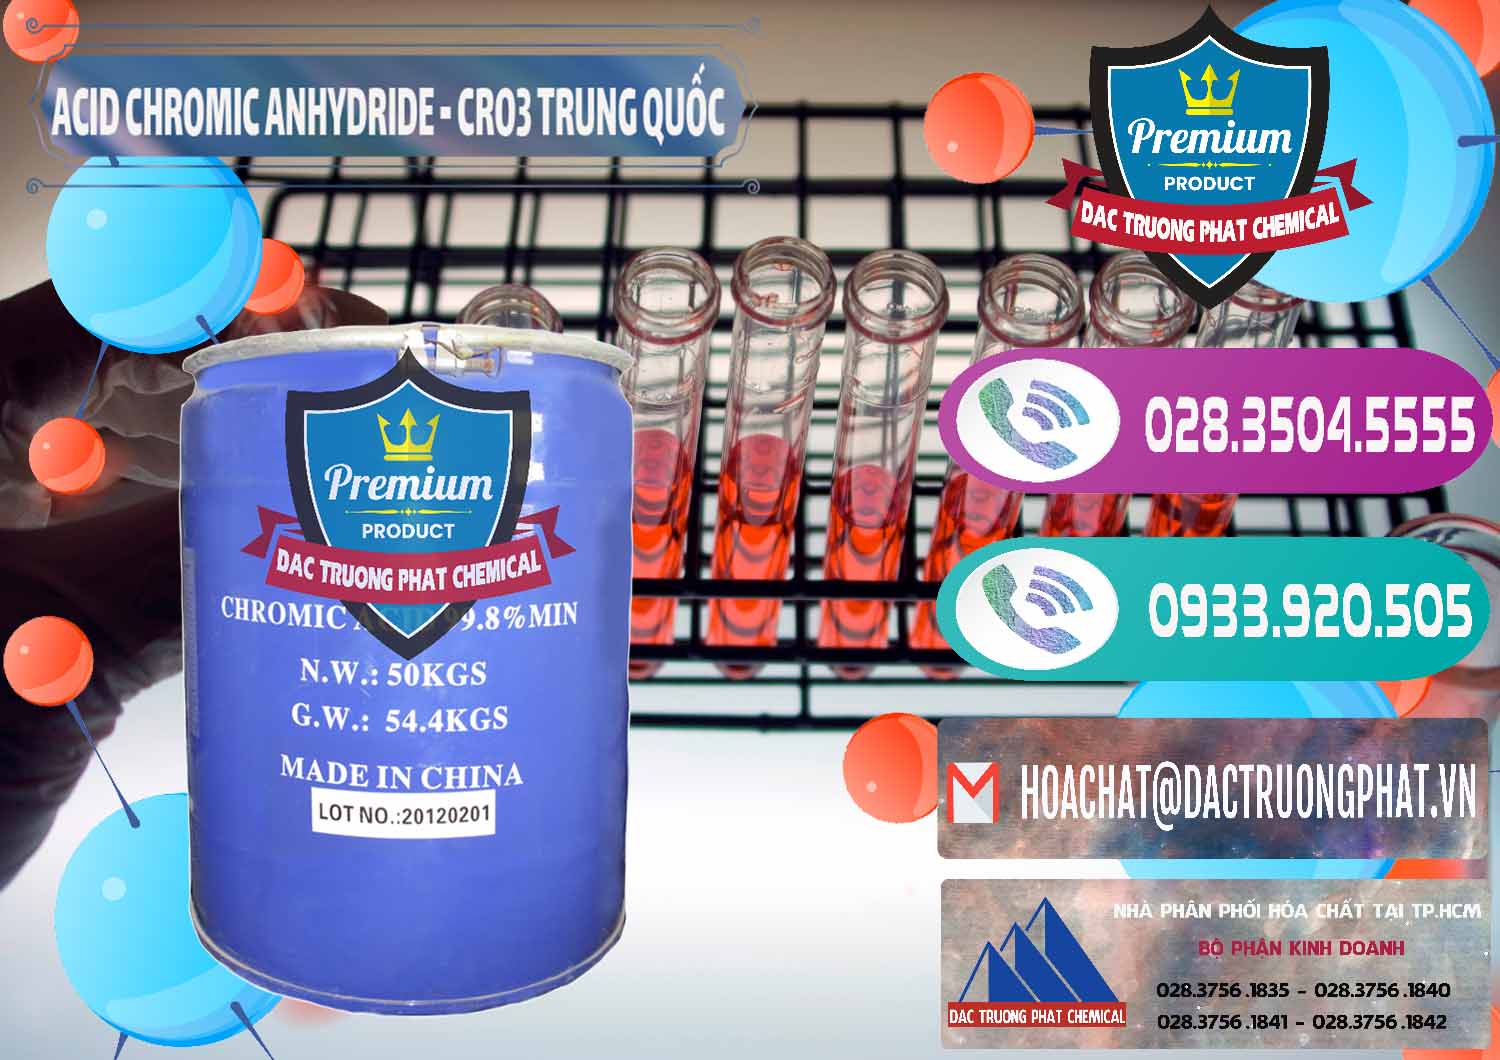 Cty chuyên cung cấp và bán Acid Chromic Anhydride - Cromic CRO3 Trung Quốc China - 0007 - Nơi cung cấp ( nhập khẩu ) hóa chất tại TP.HCM - hoachatxulynuoc.com